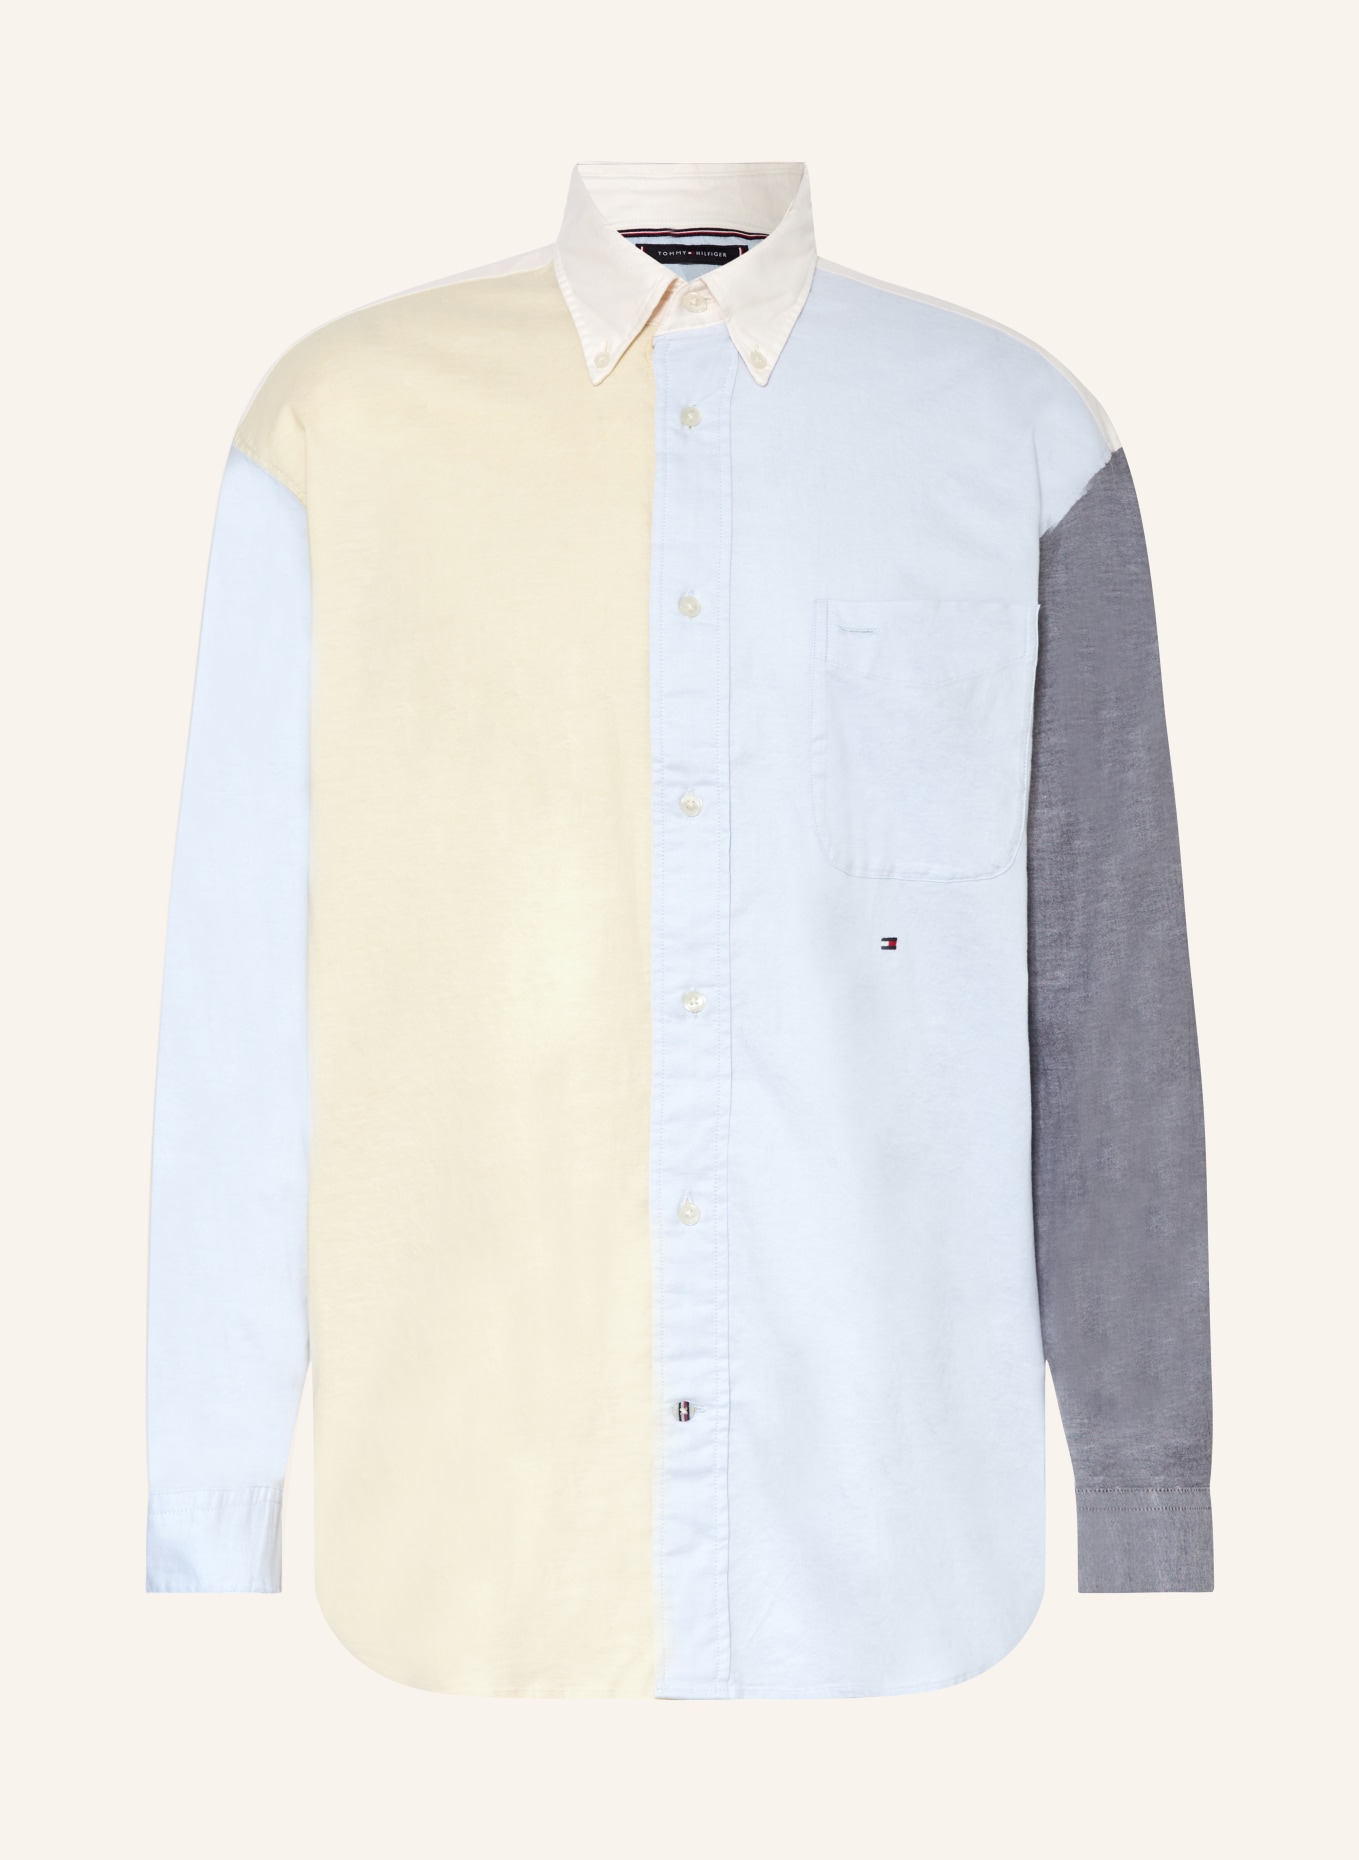 TOMMY HILFIGER Oxfordhemd Archive Fit, Farbe: HELLGELB/ HELLBLAU/ HELLGRAU (Bild 1)